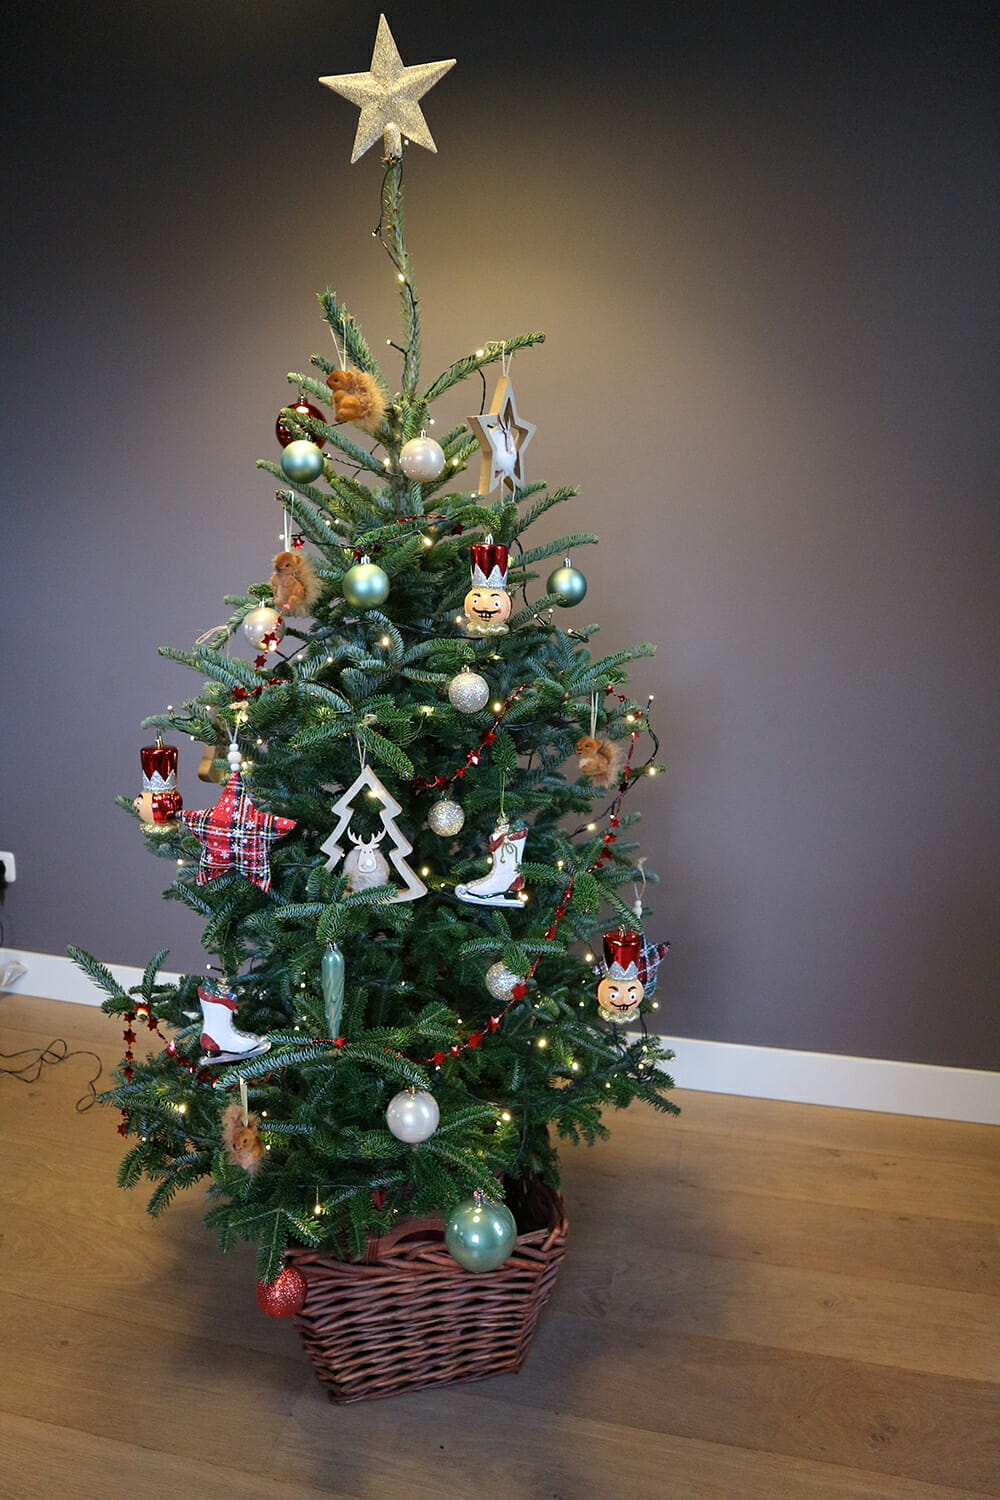 kans Speels Toegangsprijs Versierpakket speciaal voor kinderen Winter Wonderland - Echte kerstboom  kopen